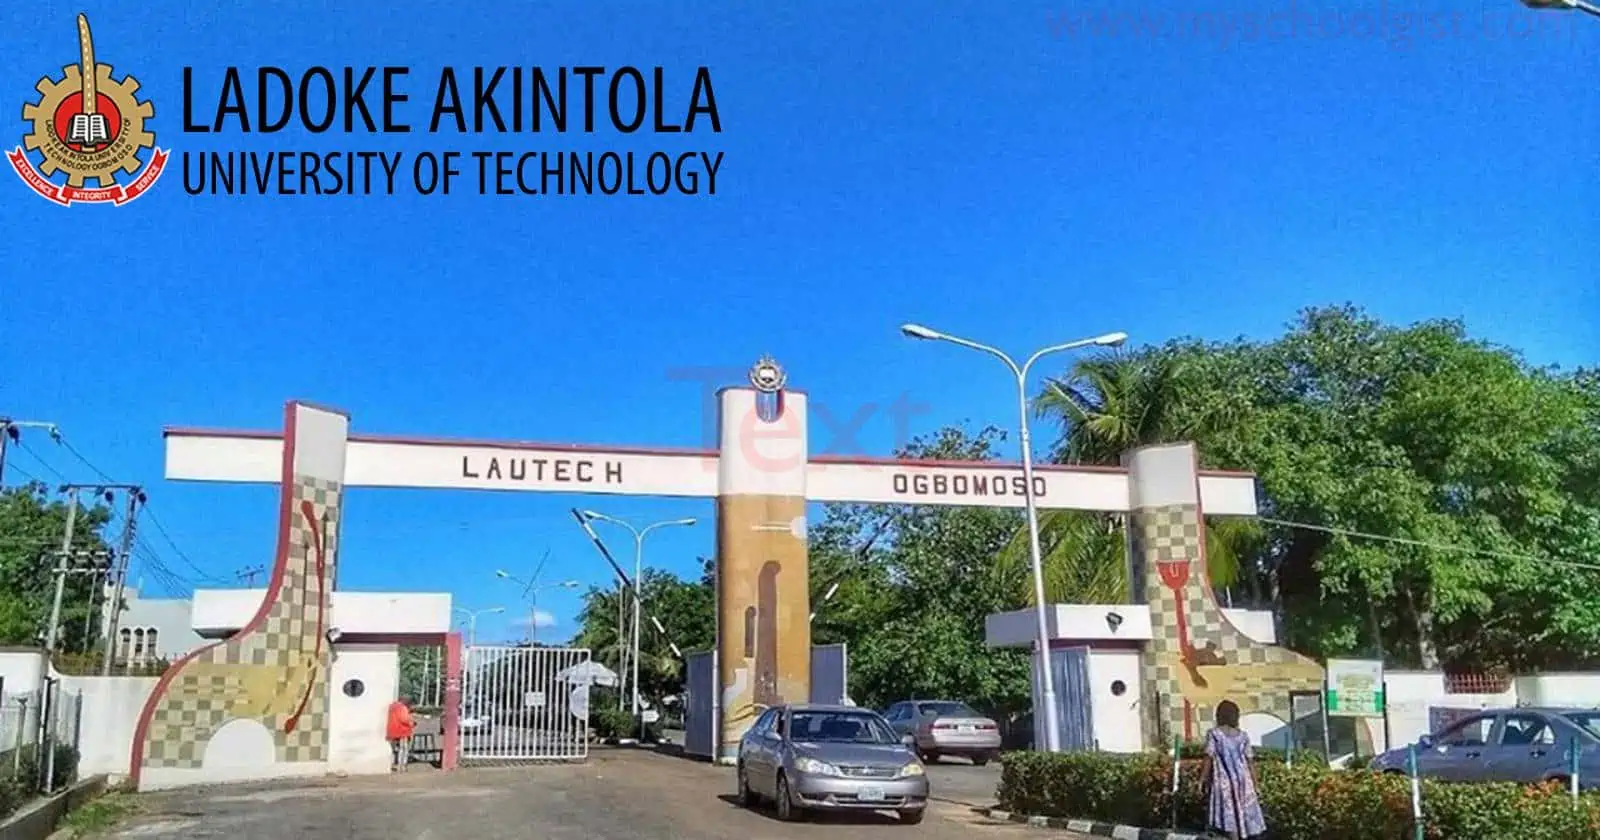 Ladoke Akintola University of Technology Convocation Ceremony